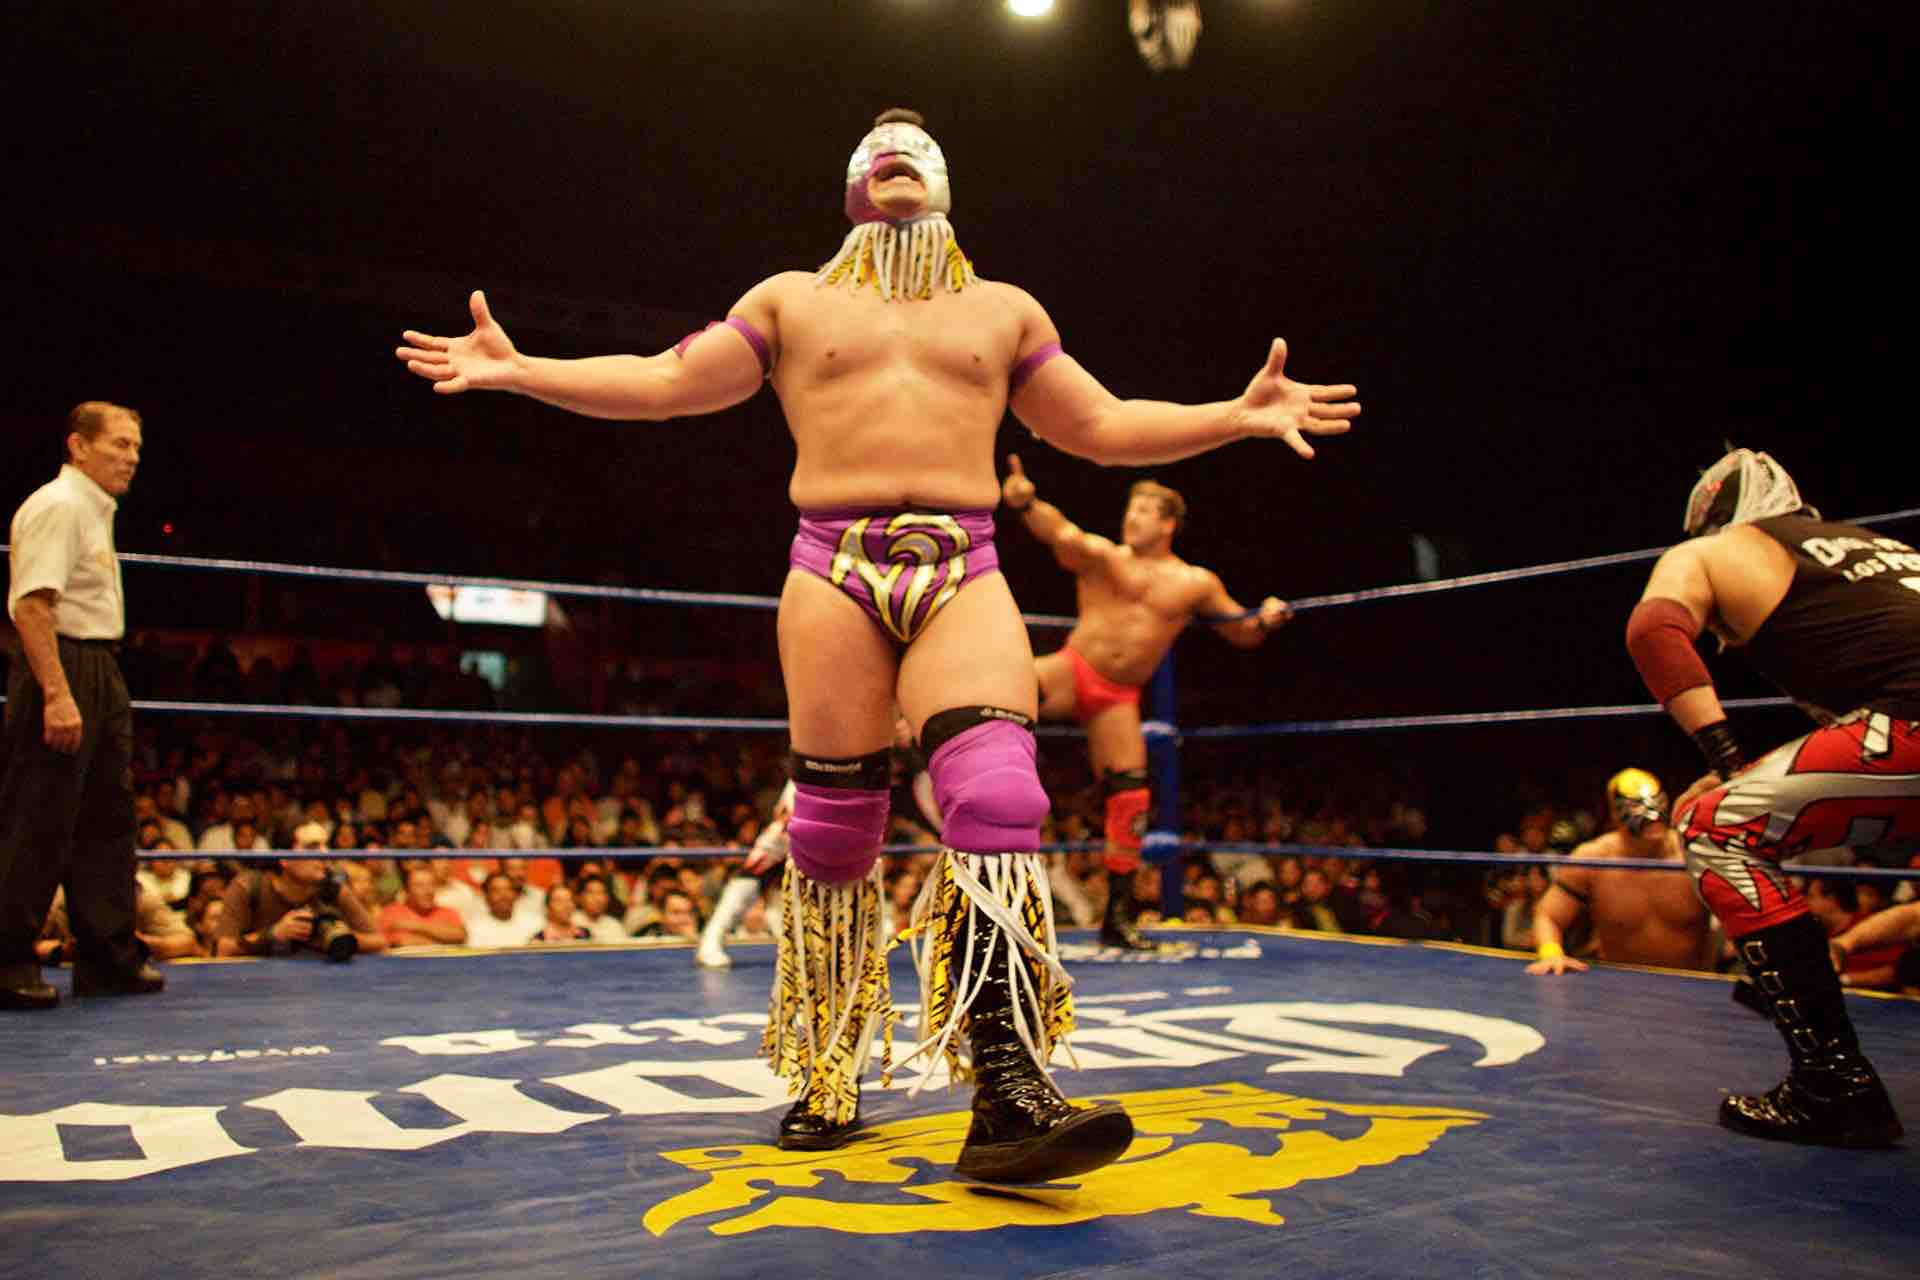 Lucha Libre Mexico City wrestler performing show